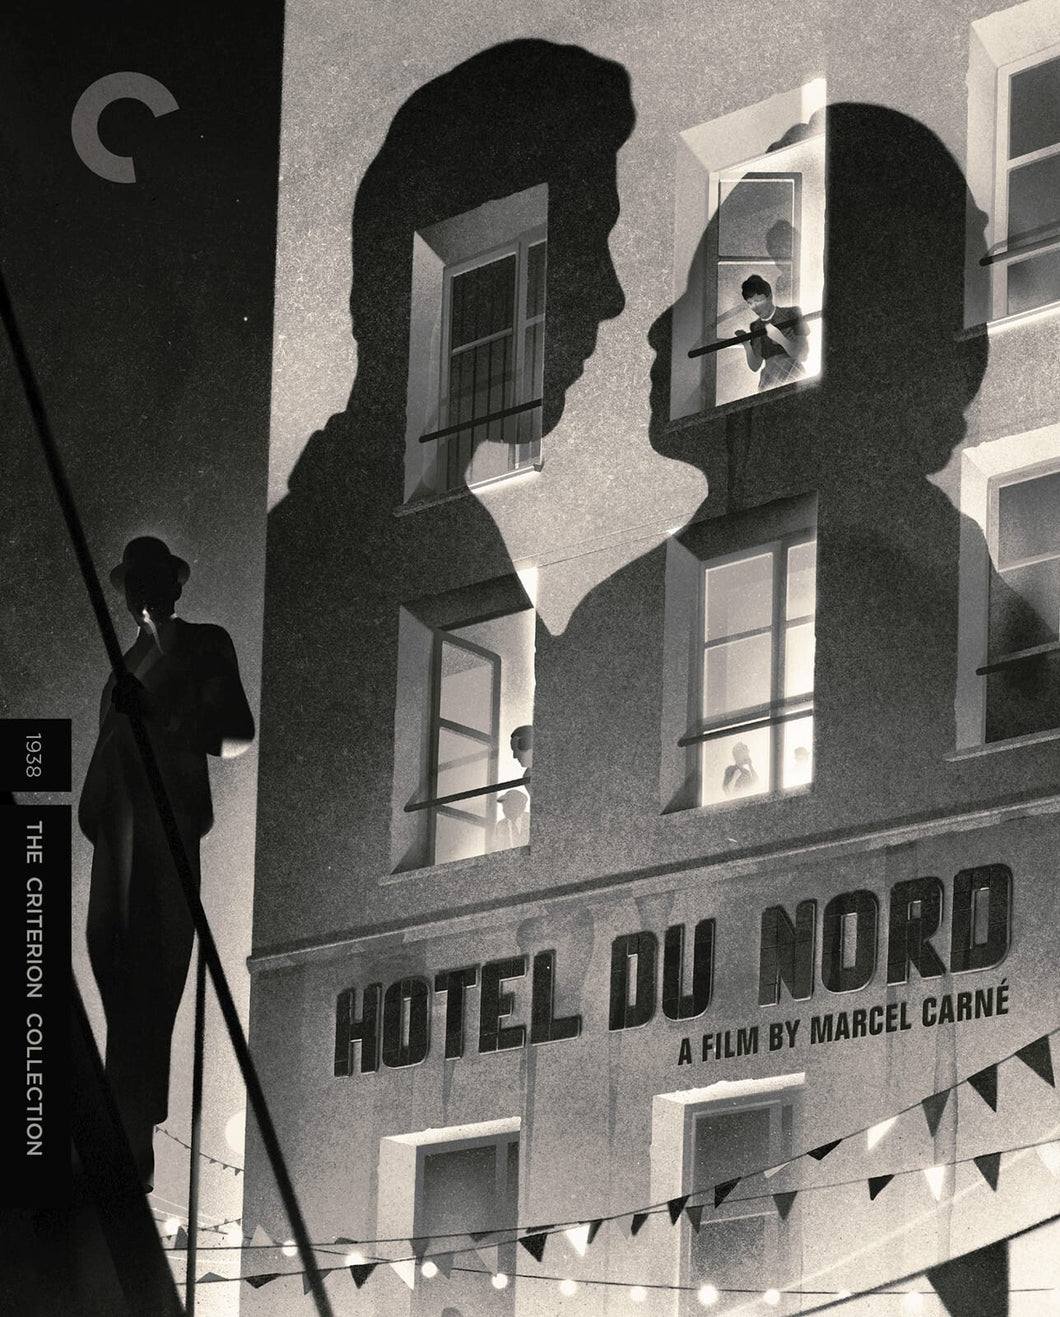 Hotel du Nord (1938) de Marcel Carné - front cover